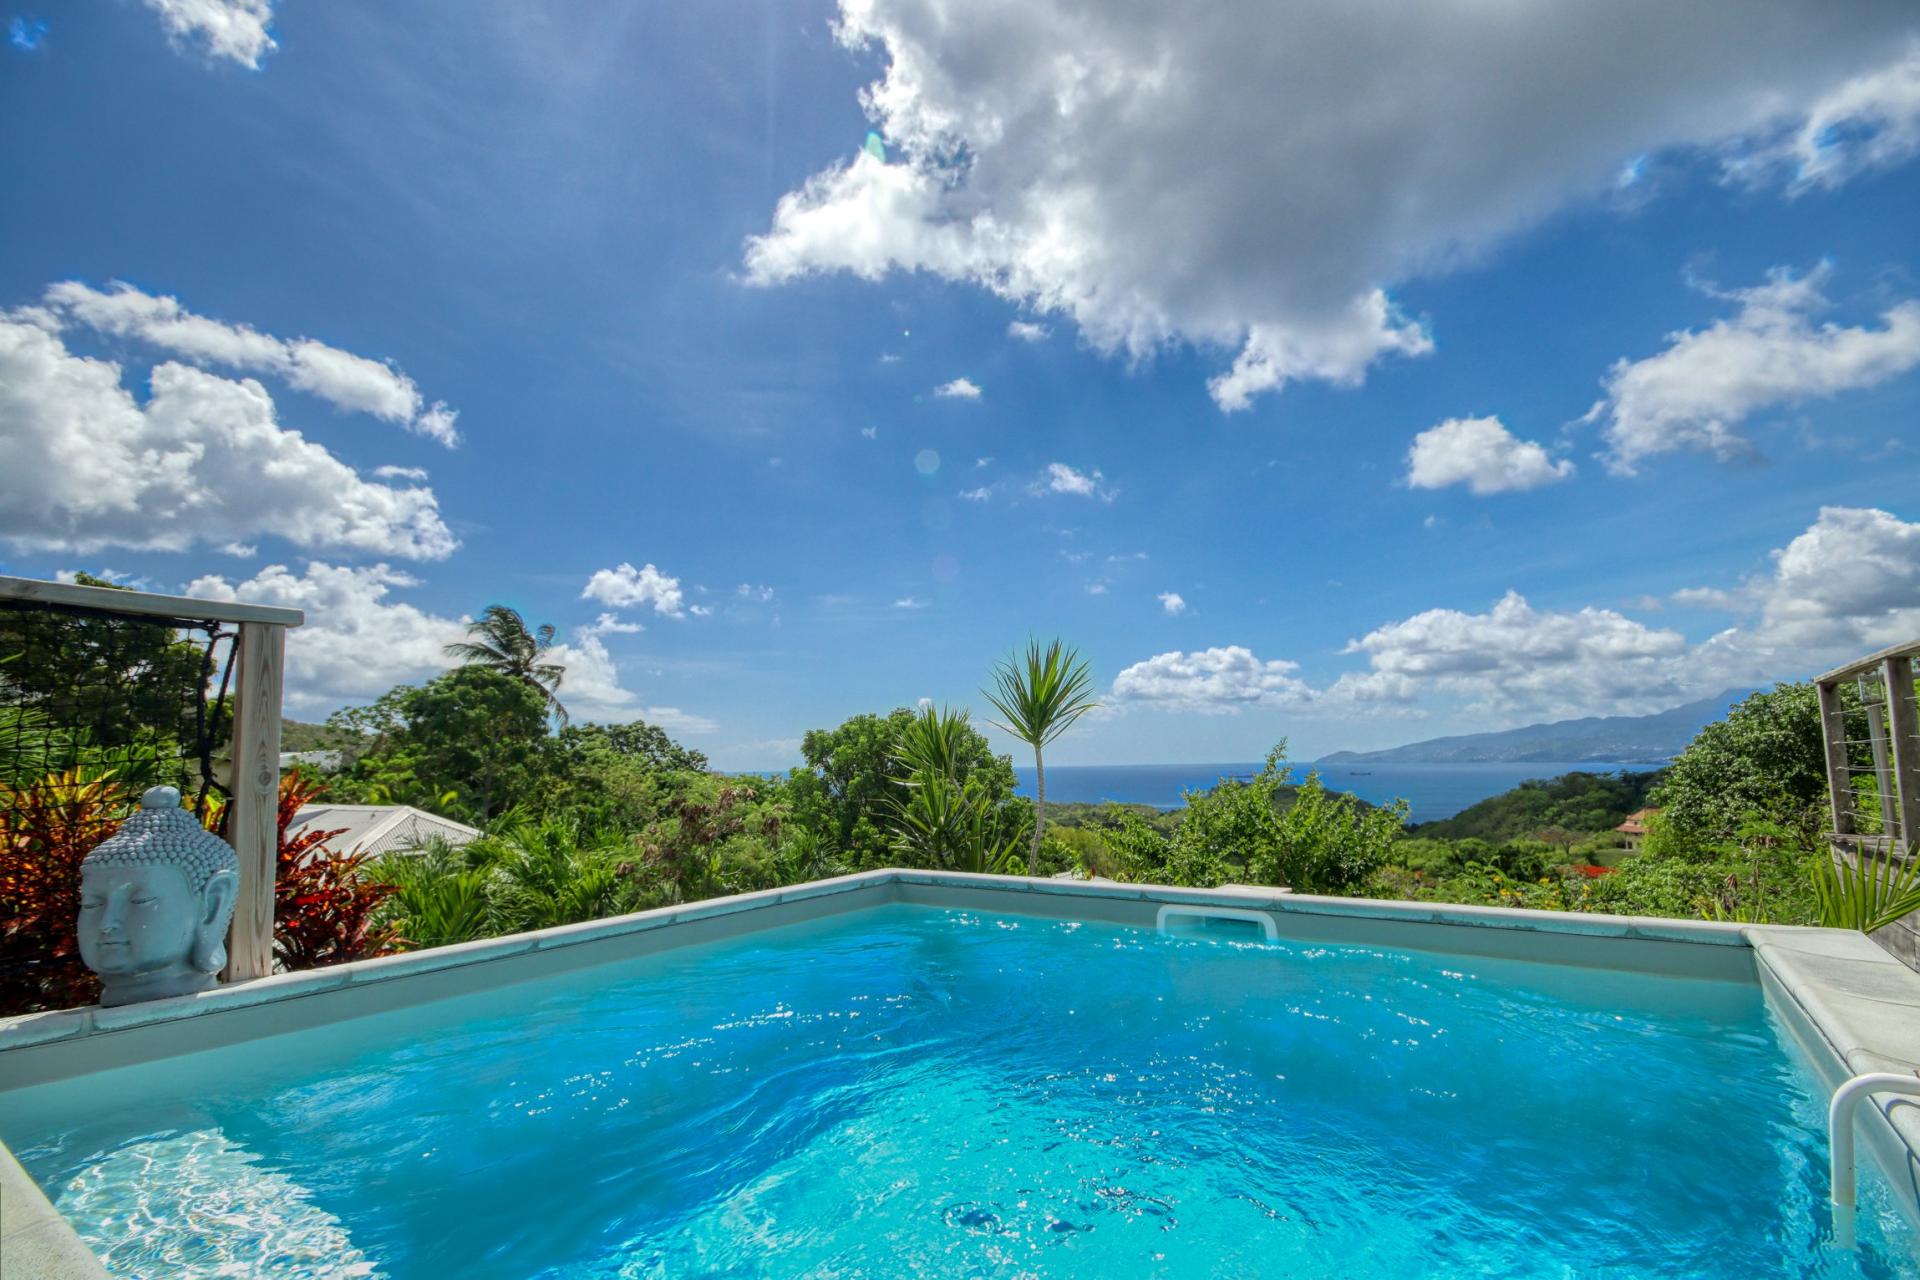 Location villa Trois Ilets Martinique - Piscine